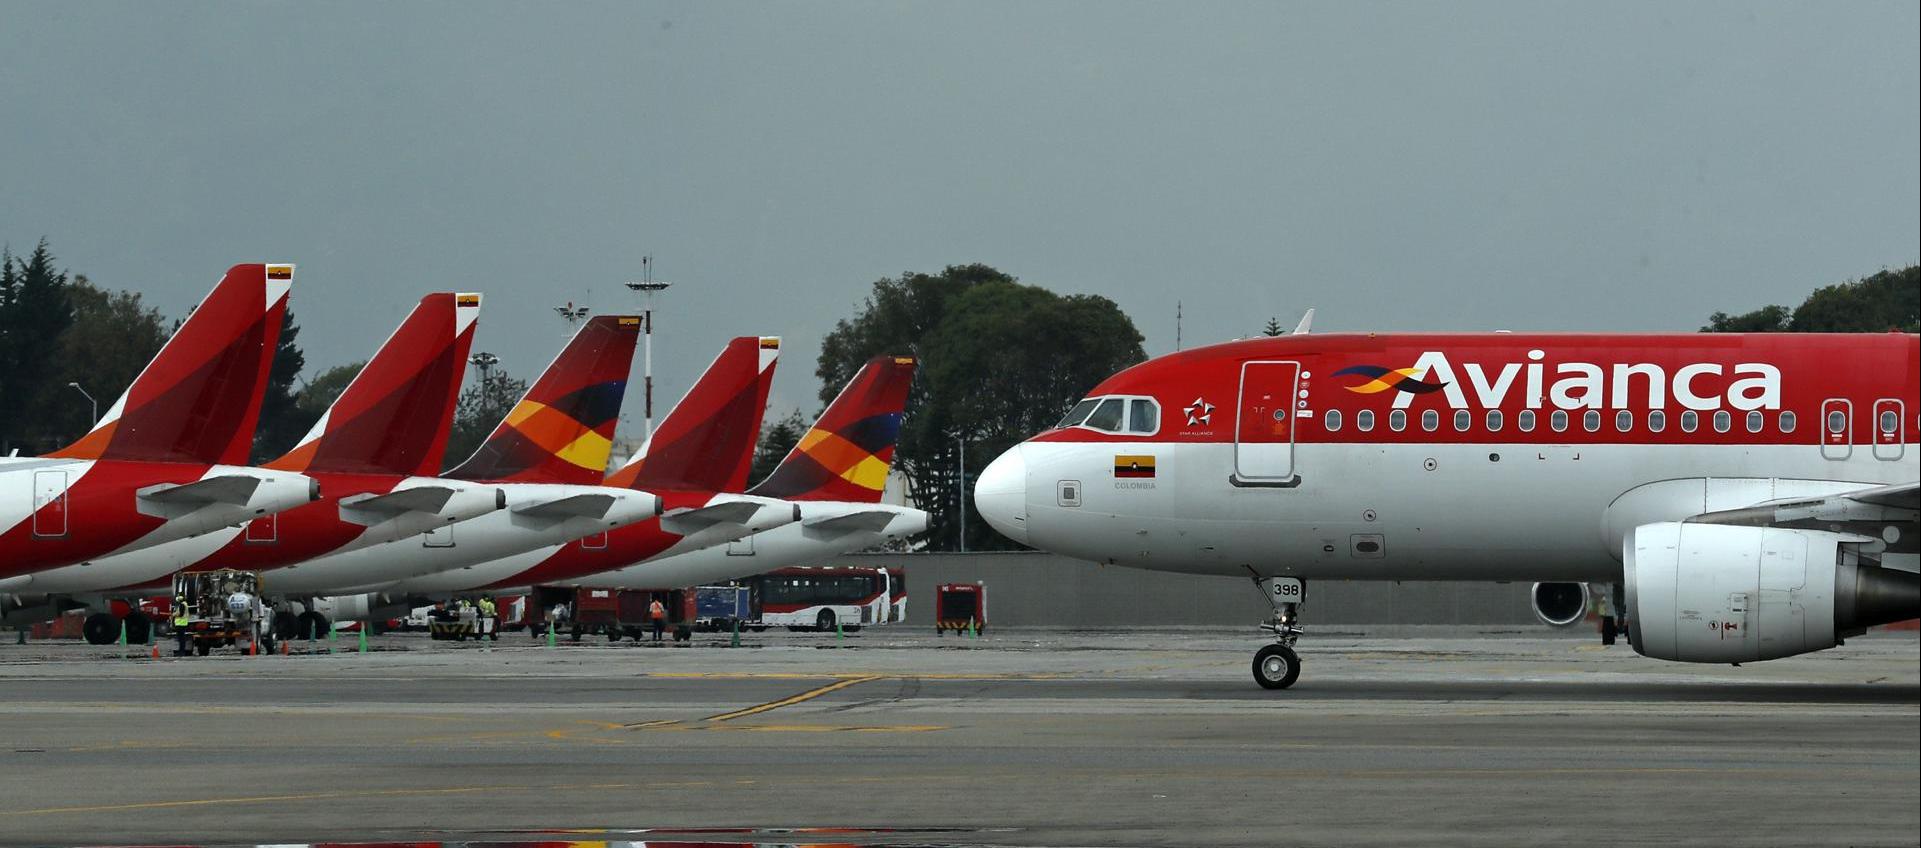 Un avión de la aerolínea Avianca aterriza en el aeropuerto El Dorado de Bogotá